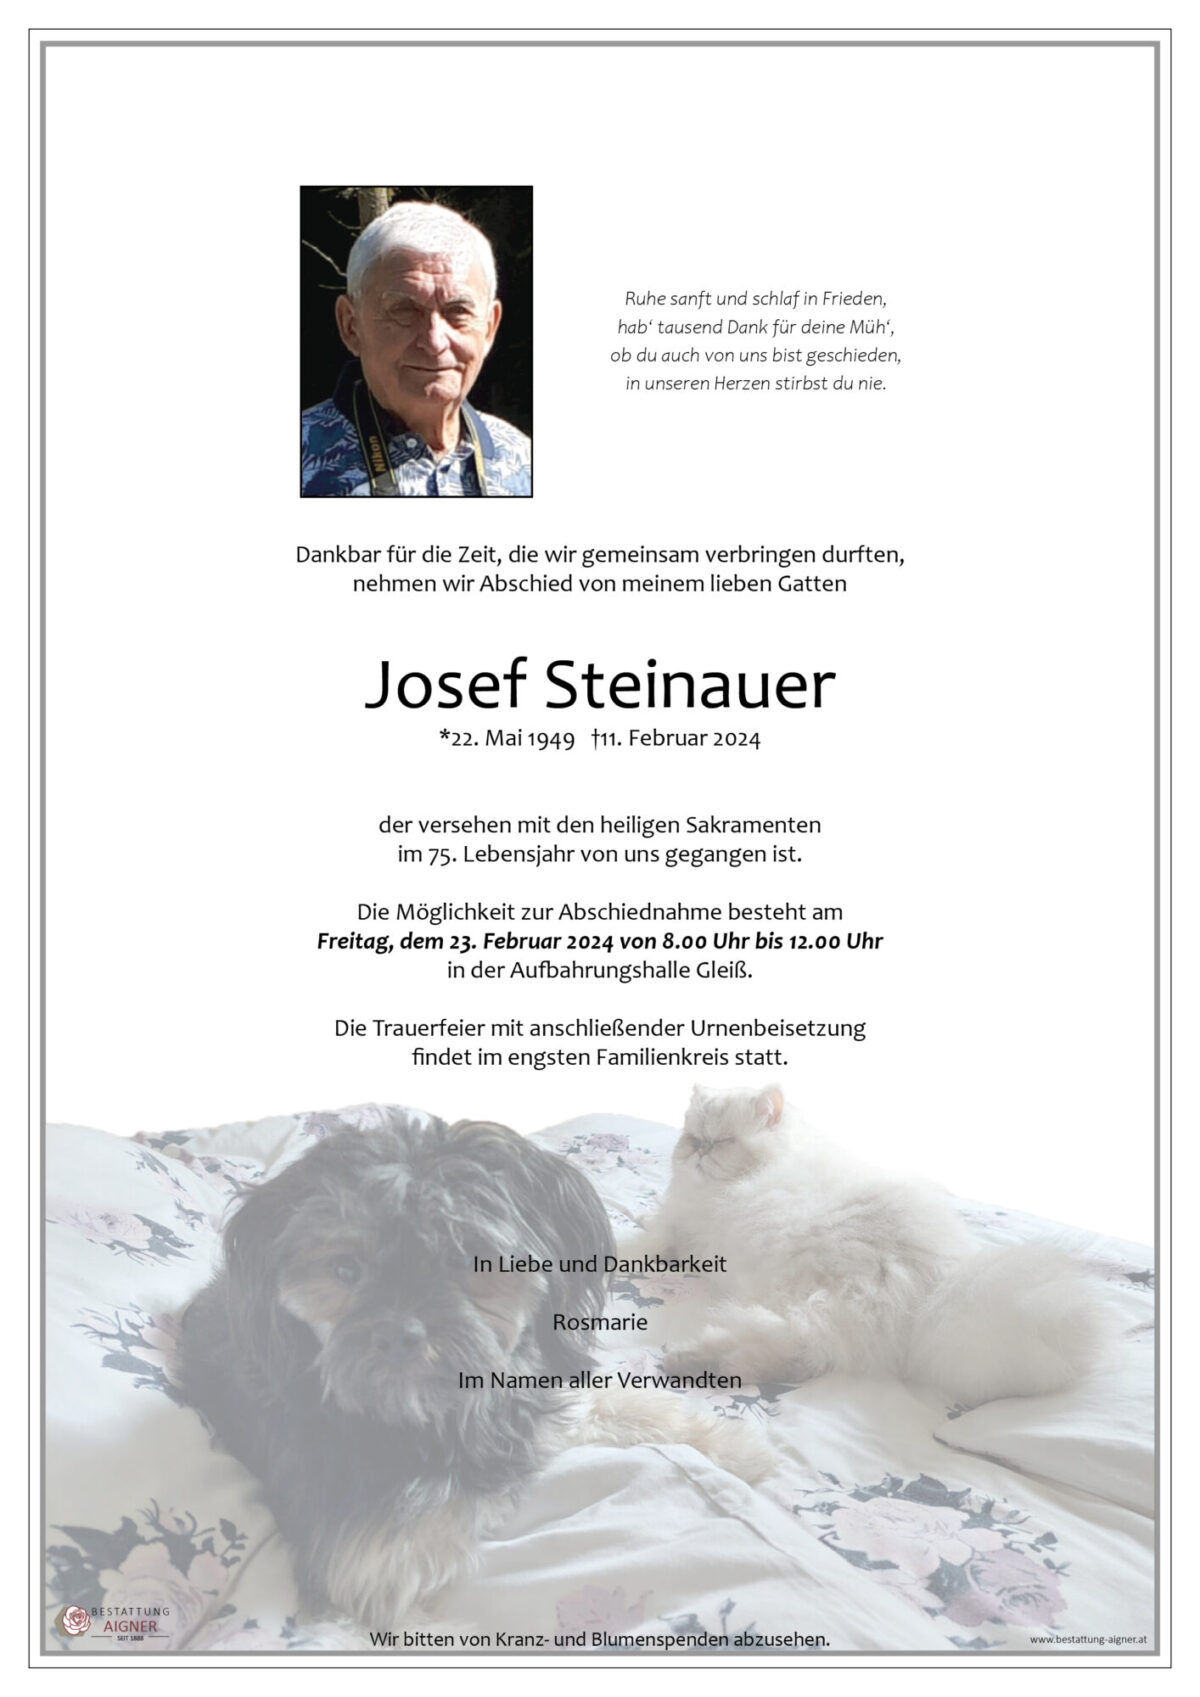 Josef Steinauer